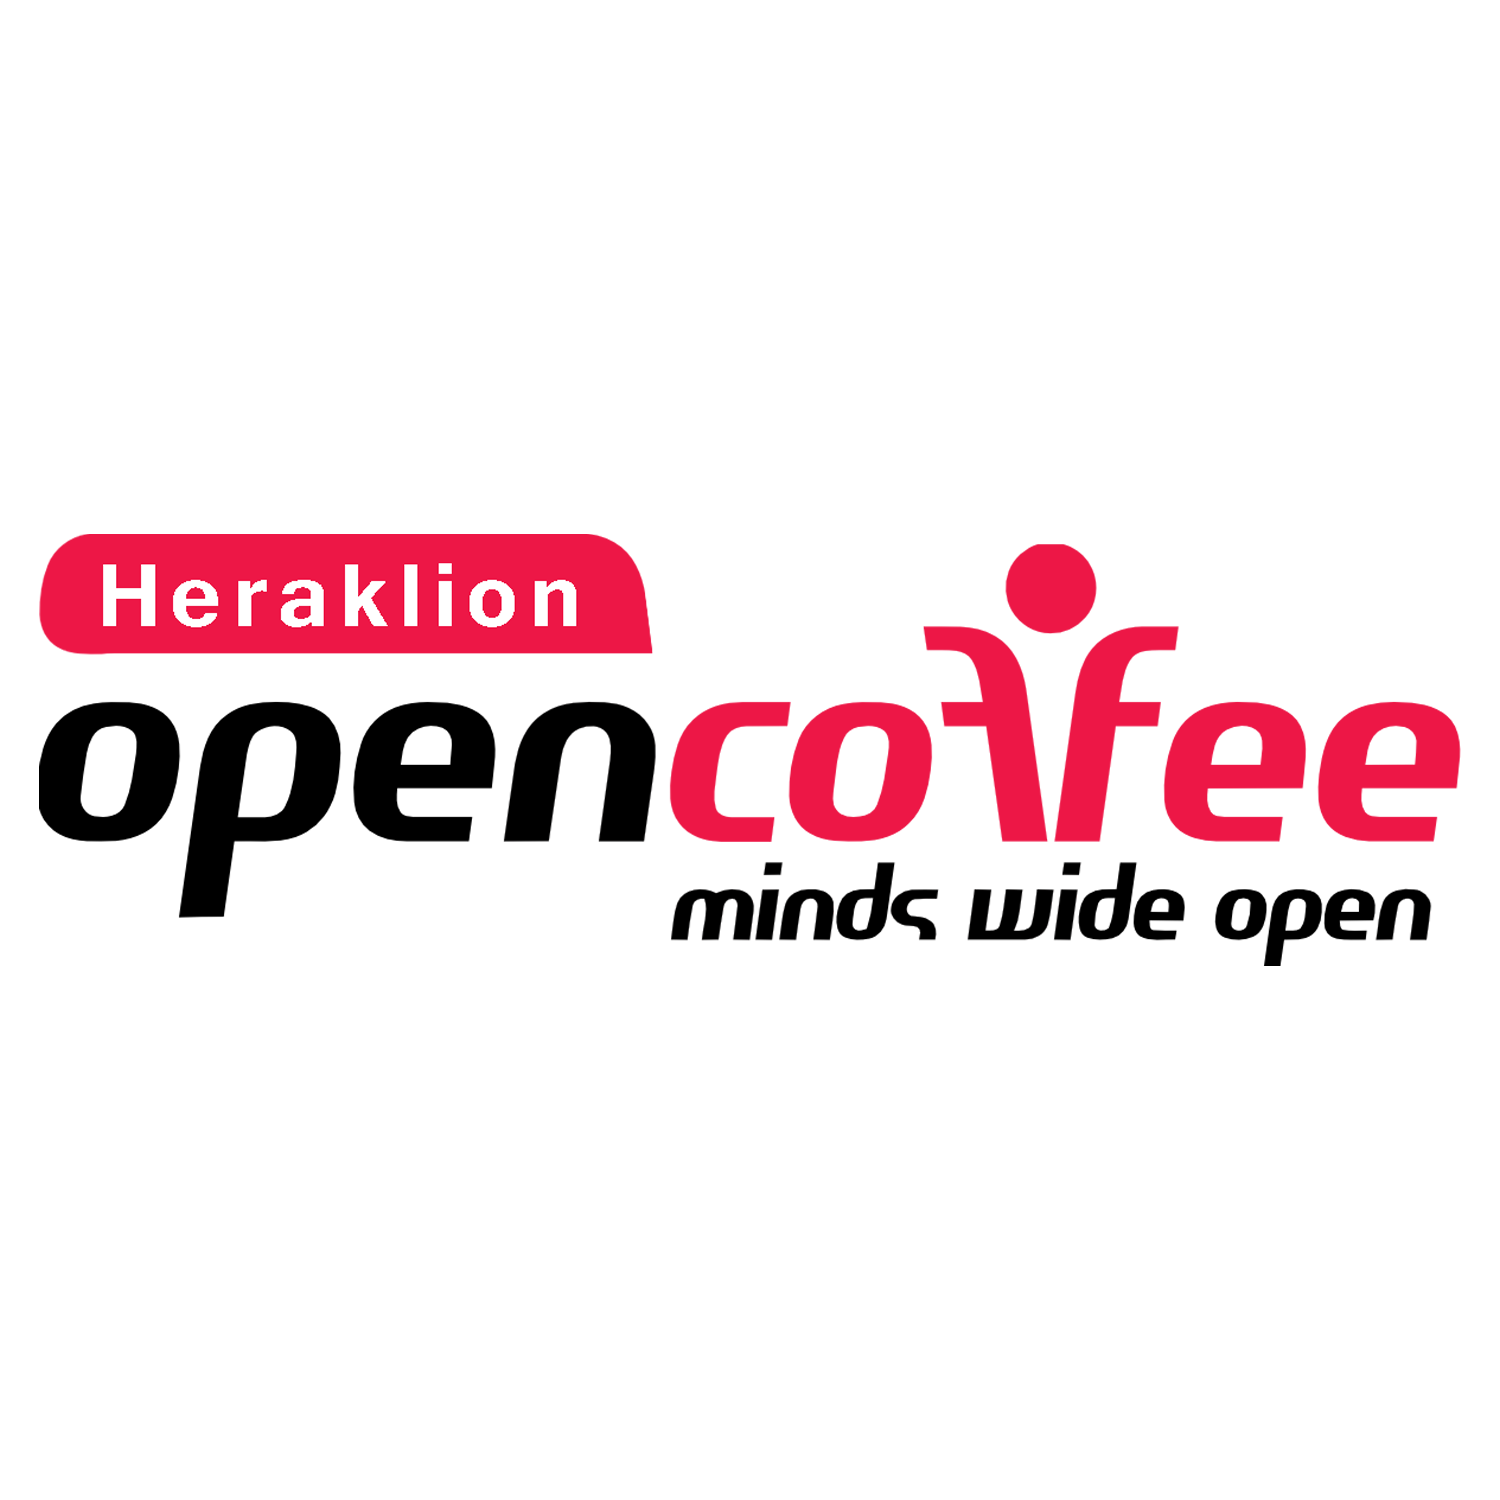 Open Coffee Heraklion